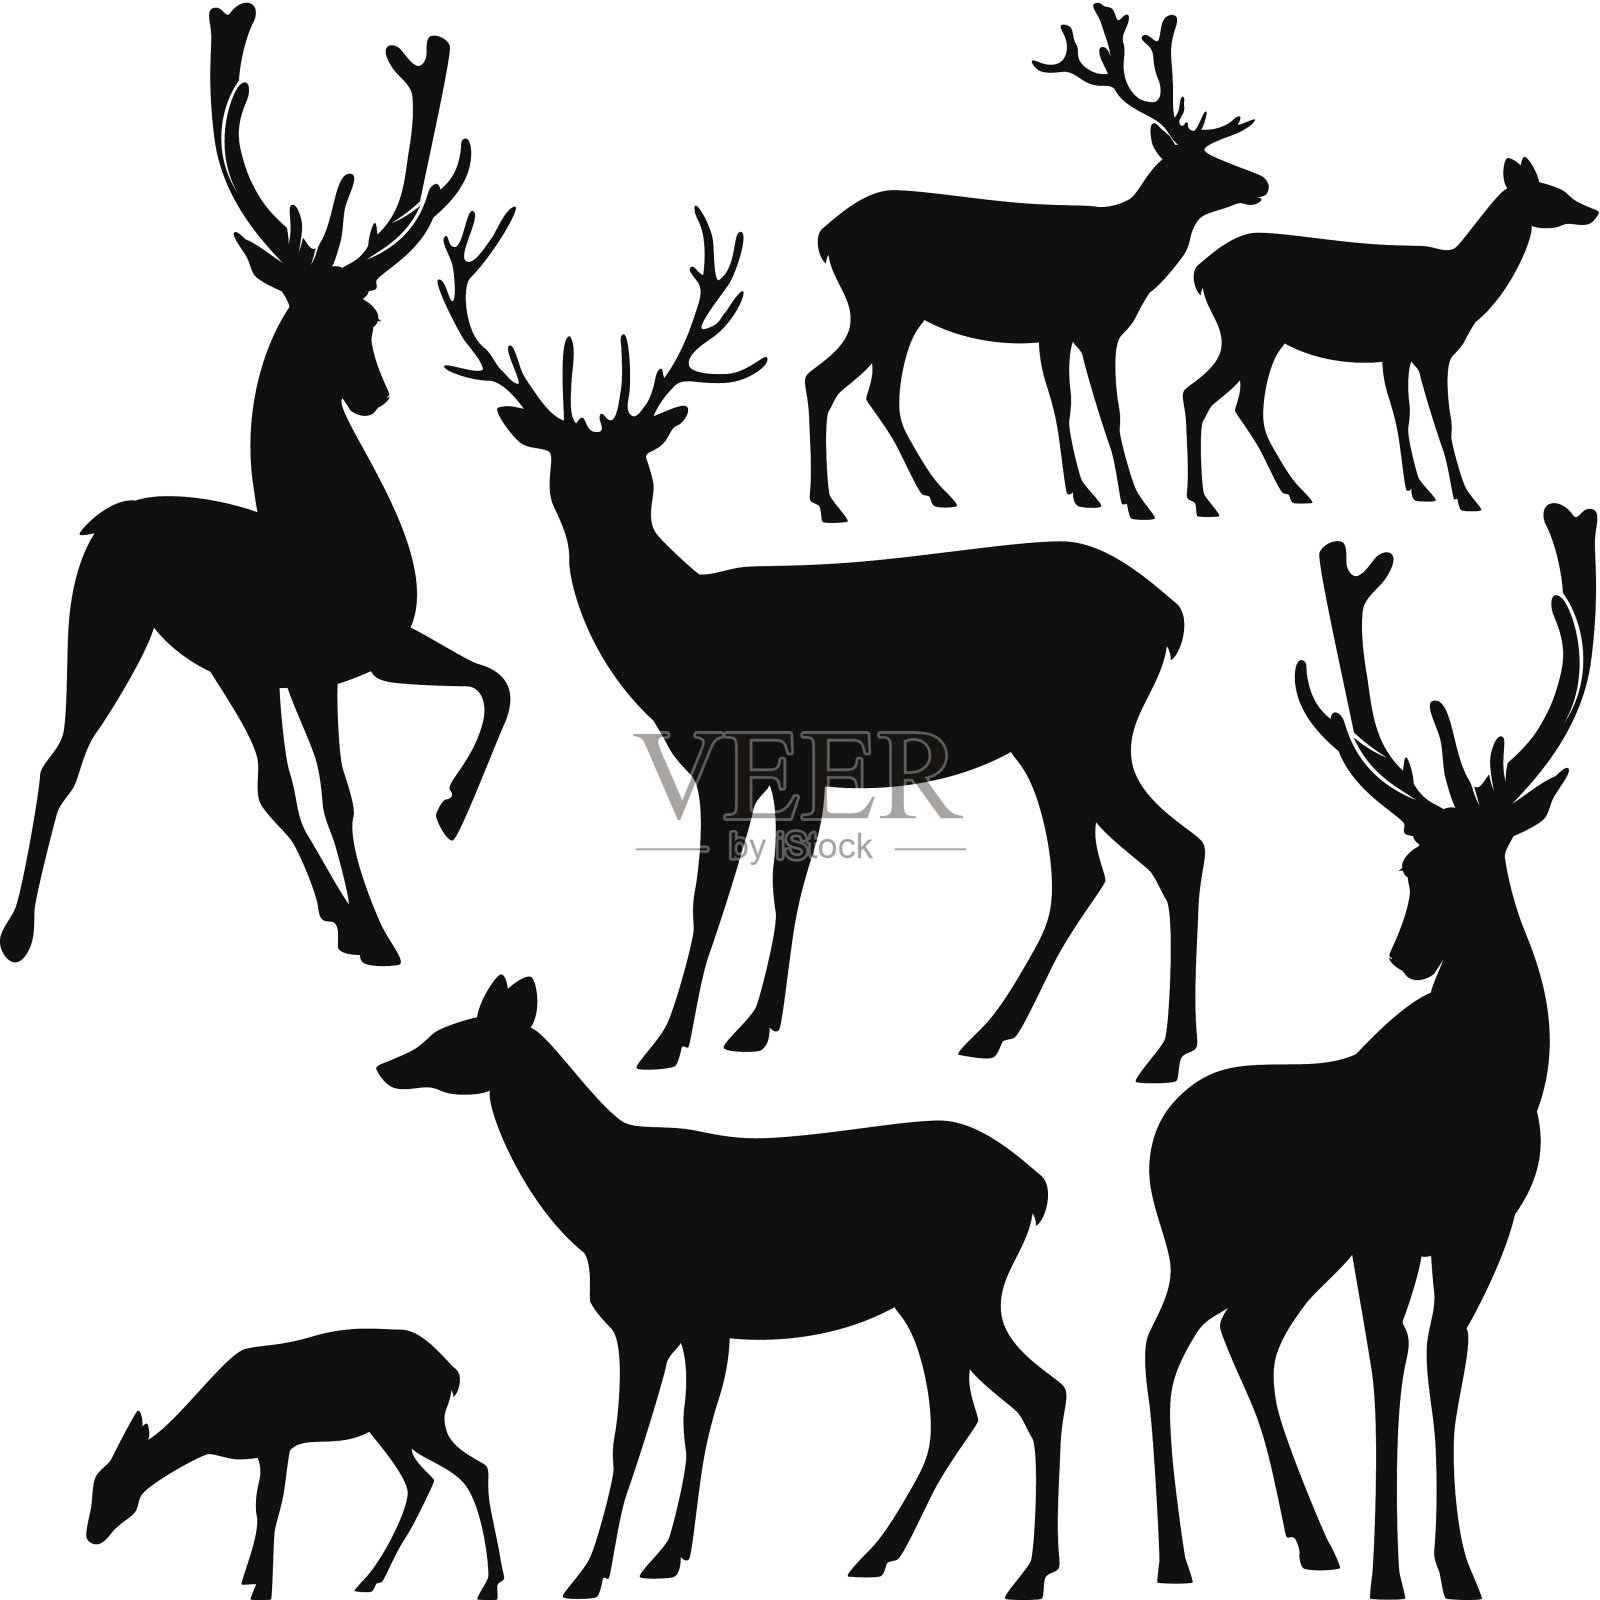 鹿轮廓集插画图片素材